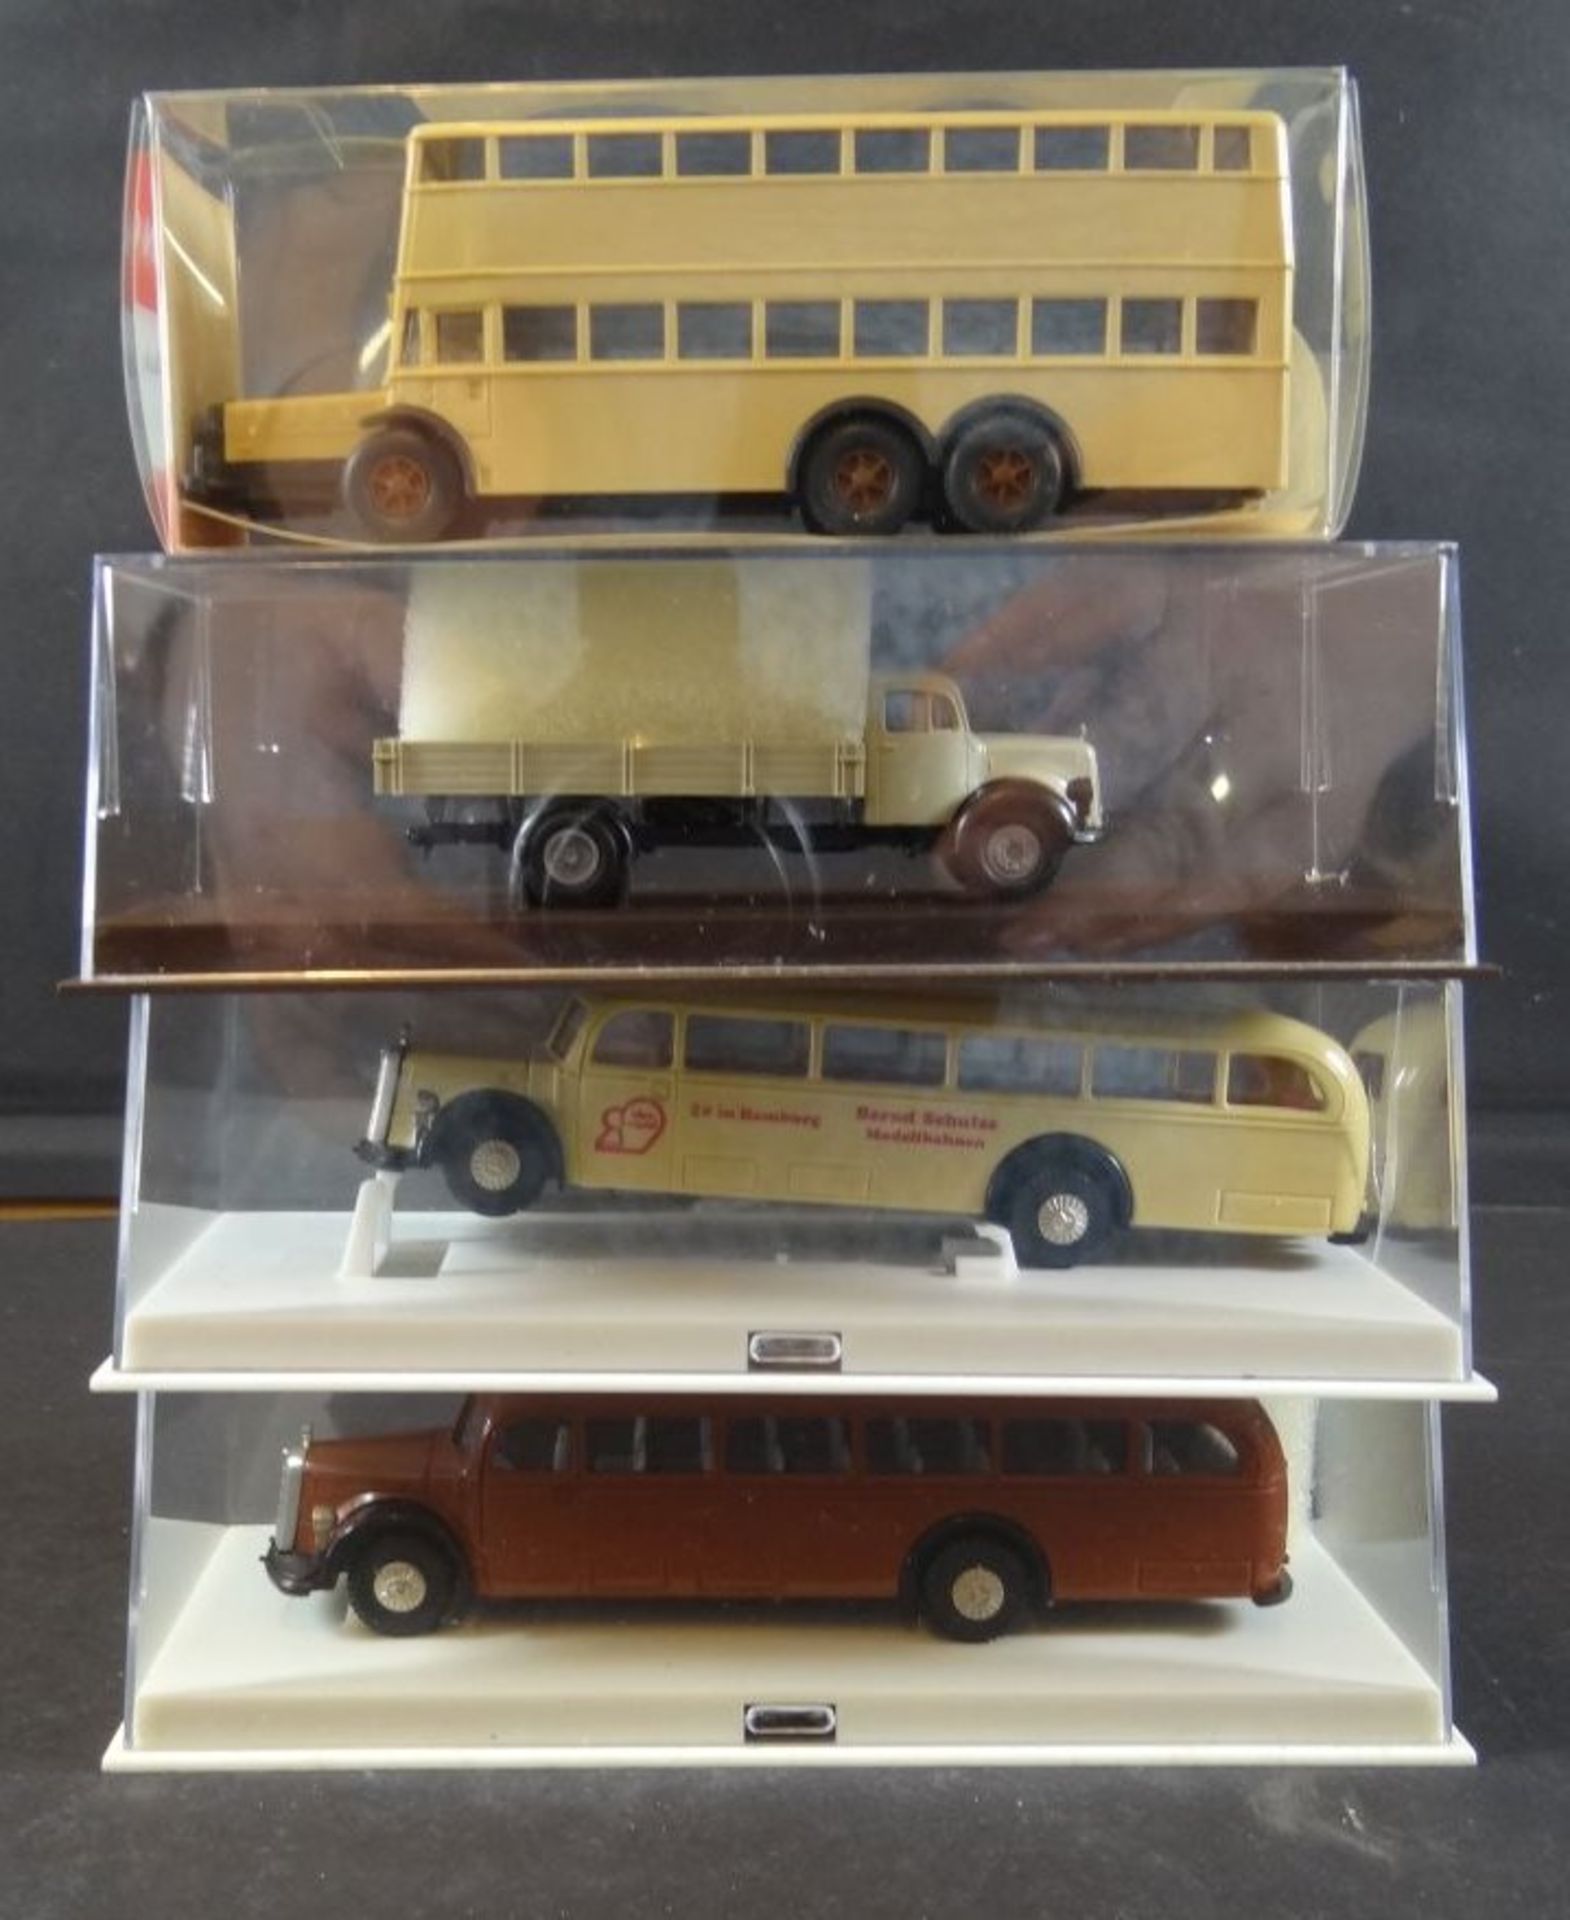 Karton mit 9 Modellautos bzw. Bussen, LKW, hpts. Wiking, tw. boxed - Bild 2 aus 8